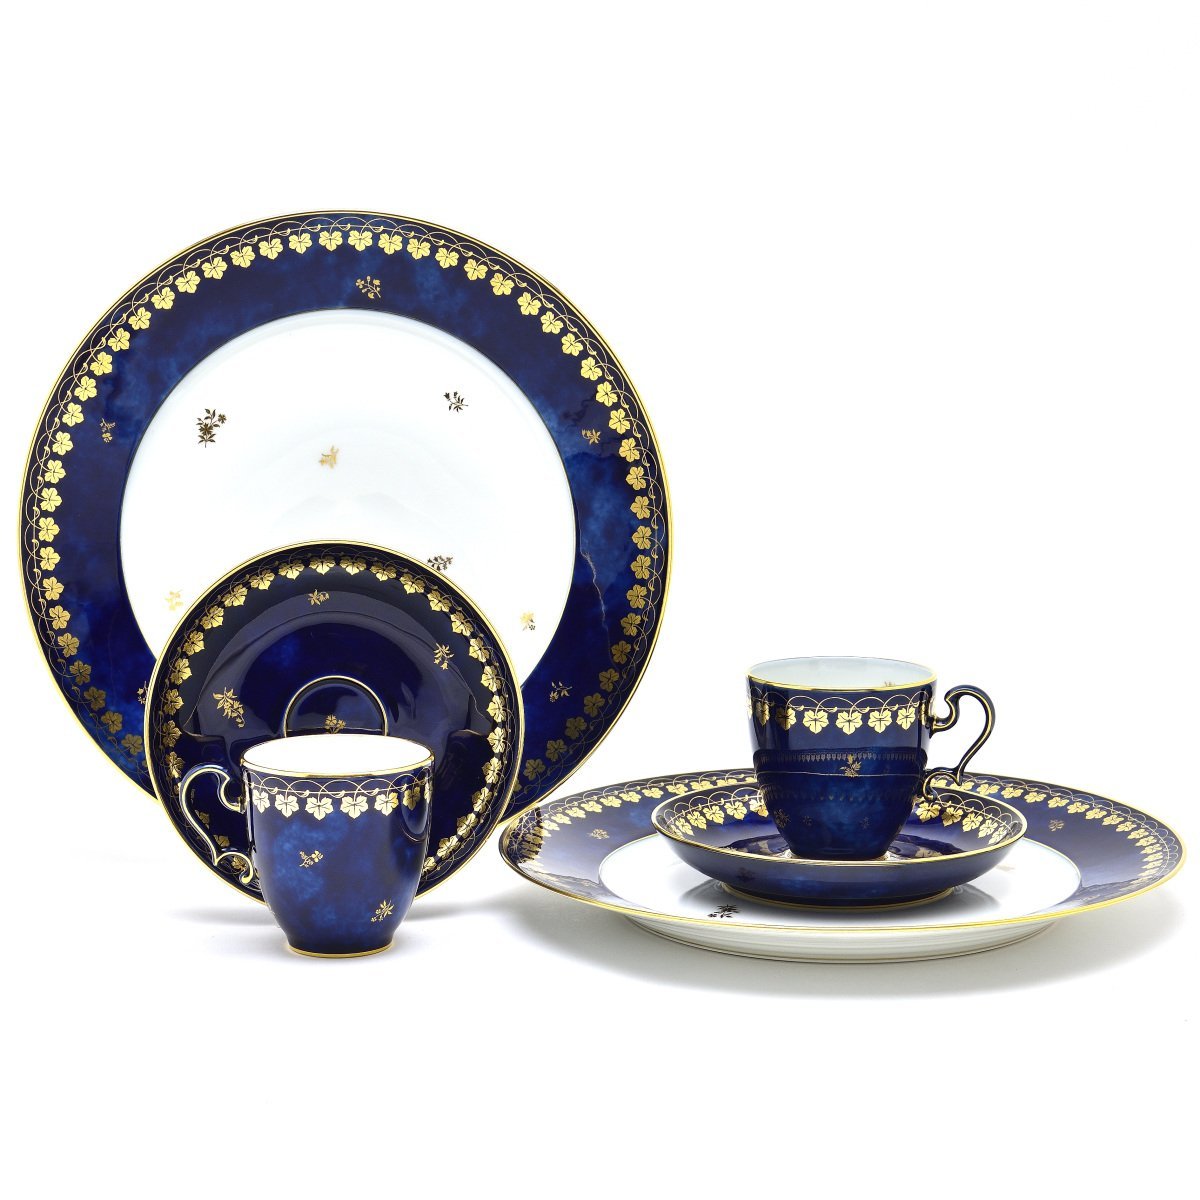 セーブル(Sevres) コーヒーカップ＆ソーサー＋デザート皿セット(2人用-6pc) セーブルブルー雲模様 オボイード(No.112) 新品